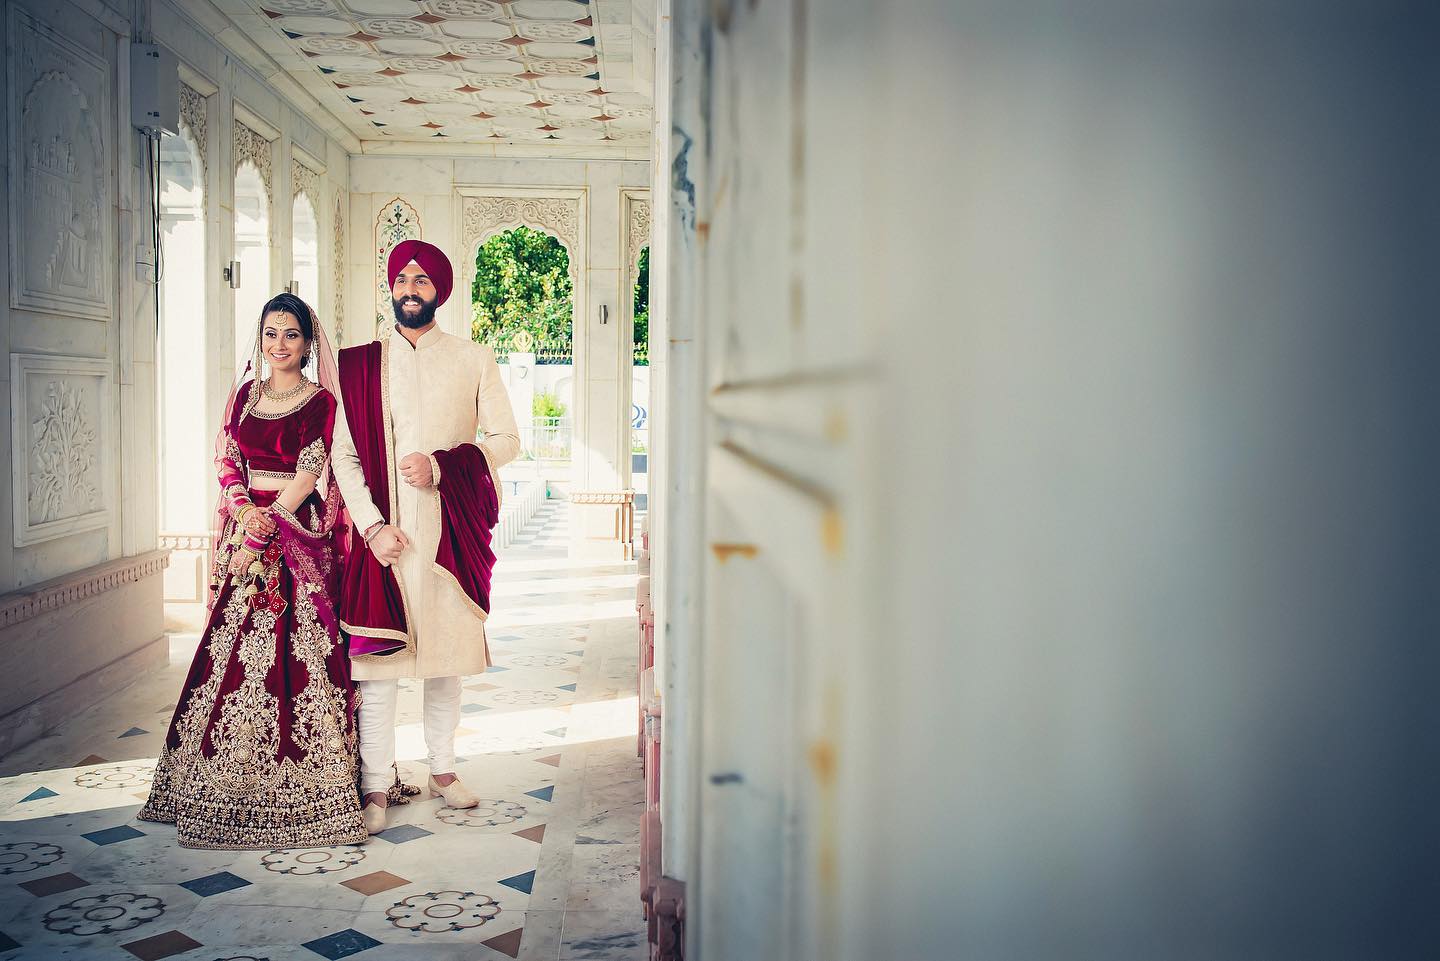 Asian wedding photography professionals at Royal Bindi in London.